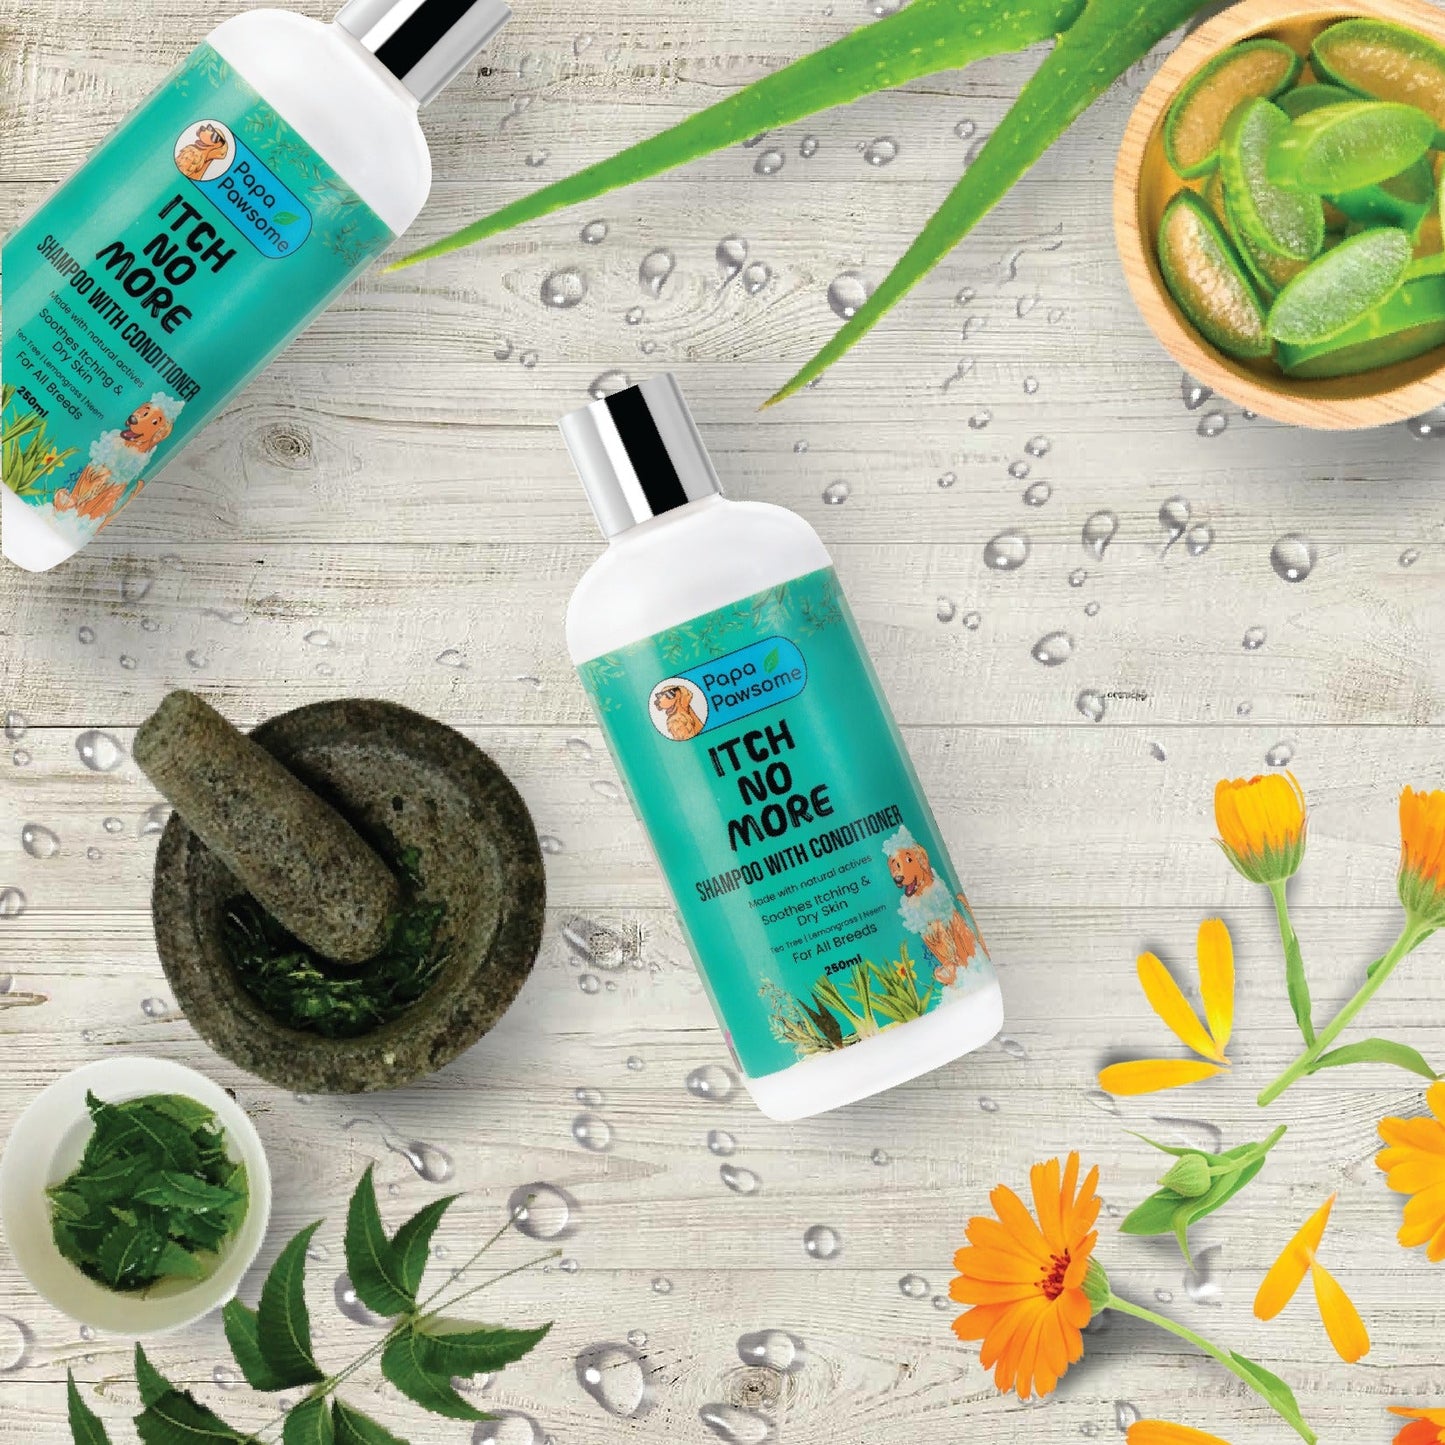 shampoo bottle with neem, Aloe Extract, Calendula Extract, Neem Supercritical Extract, Tea Tree, and lemongrass ingredients